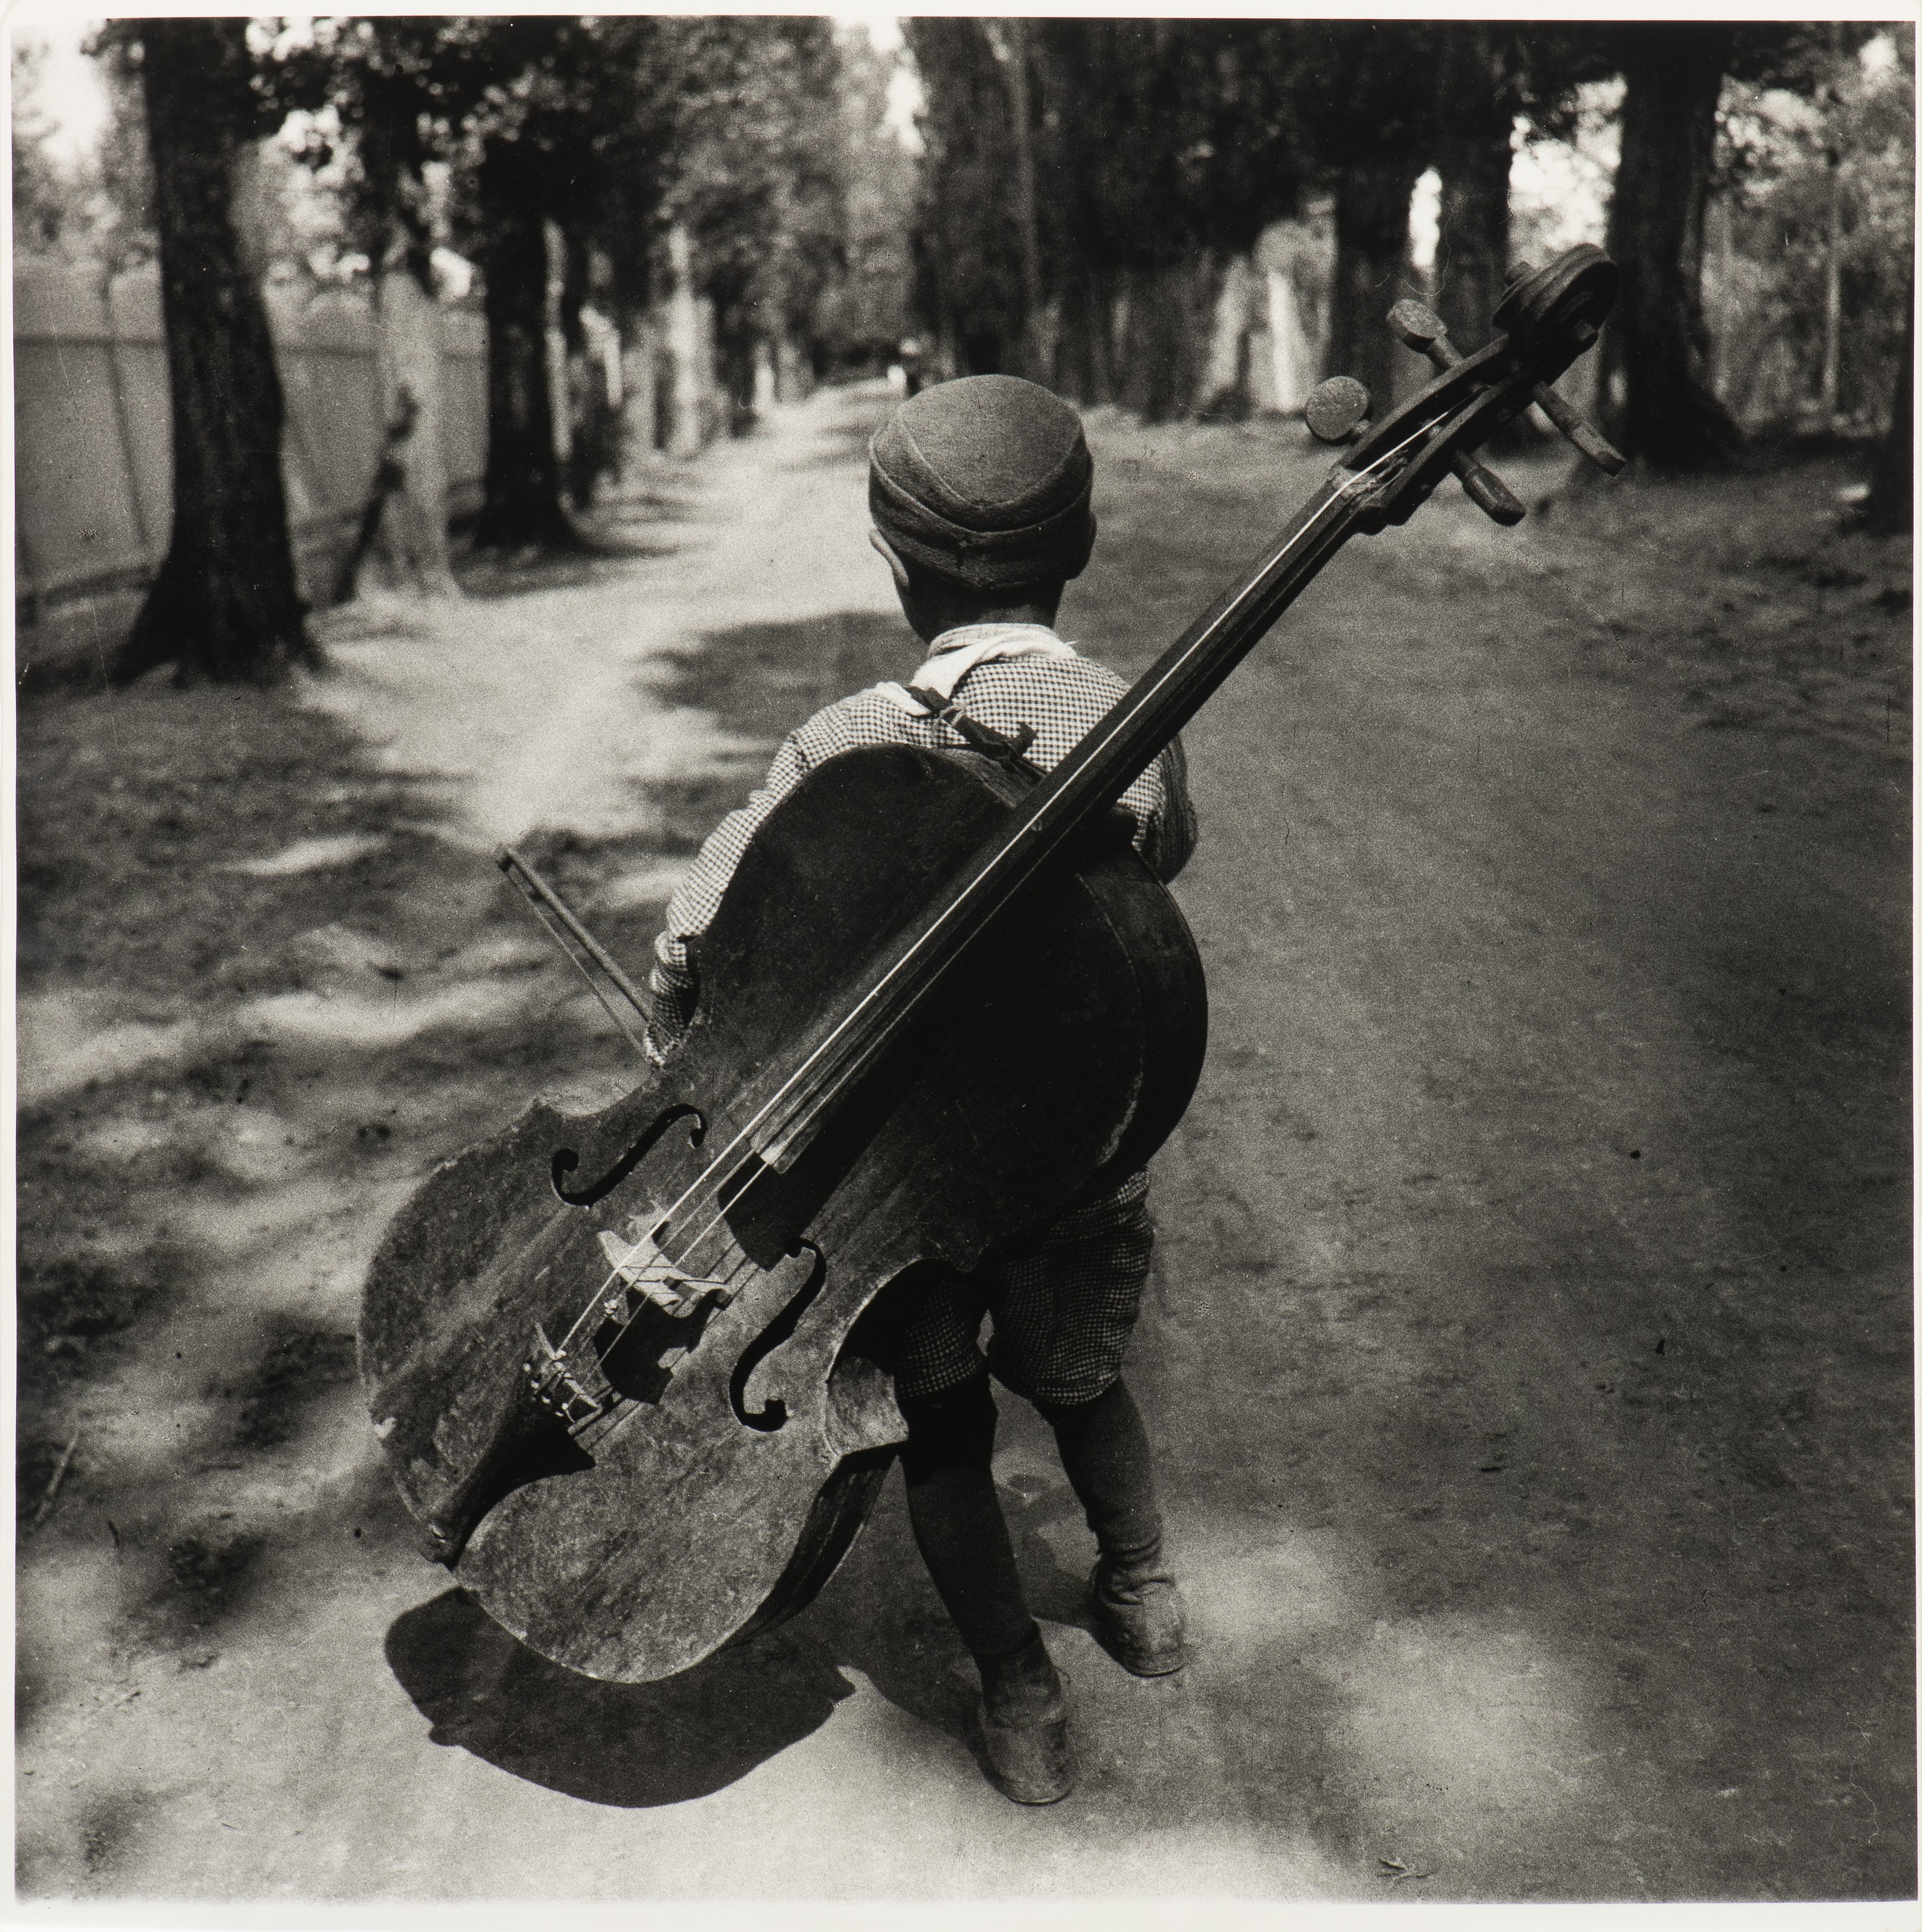 Мальчик с виолончелью, Балатон, Венгрия, 1931. Фотограф Ева Беснё